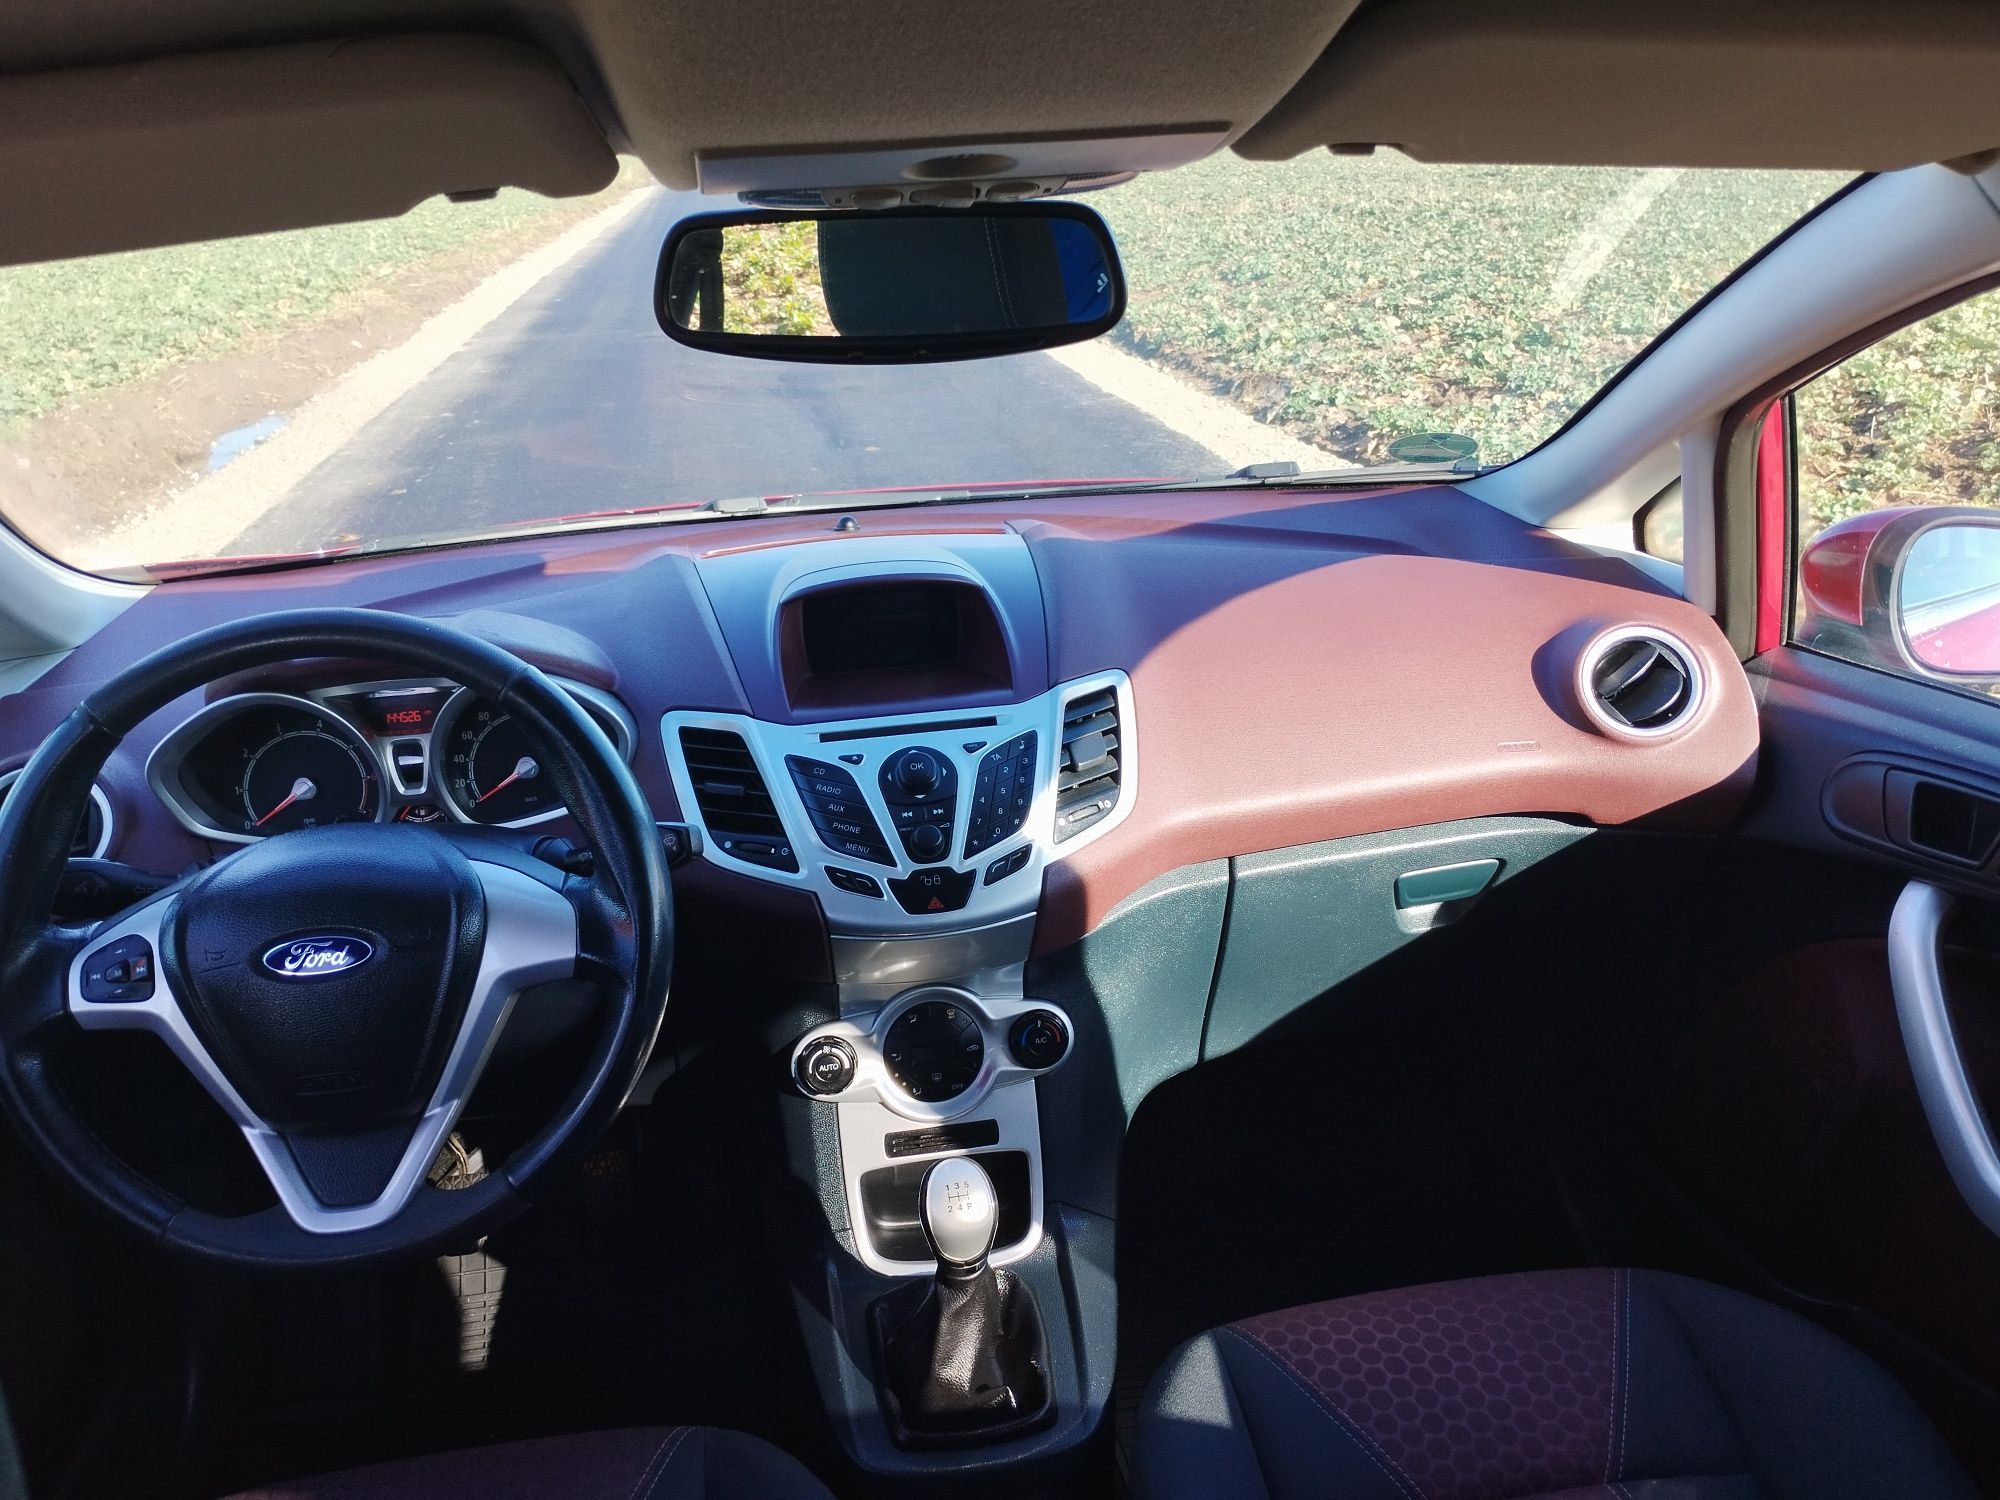 Ford Fiesta 1.25 benzyna Klimatyzacja Aluminiowe felgi Chrom Pakiet